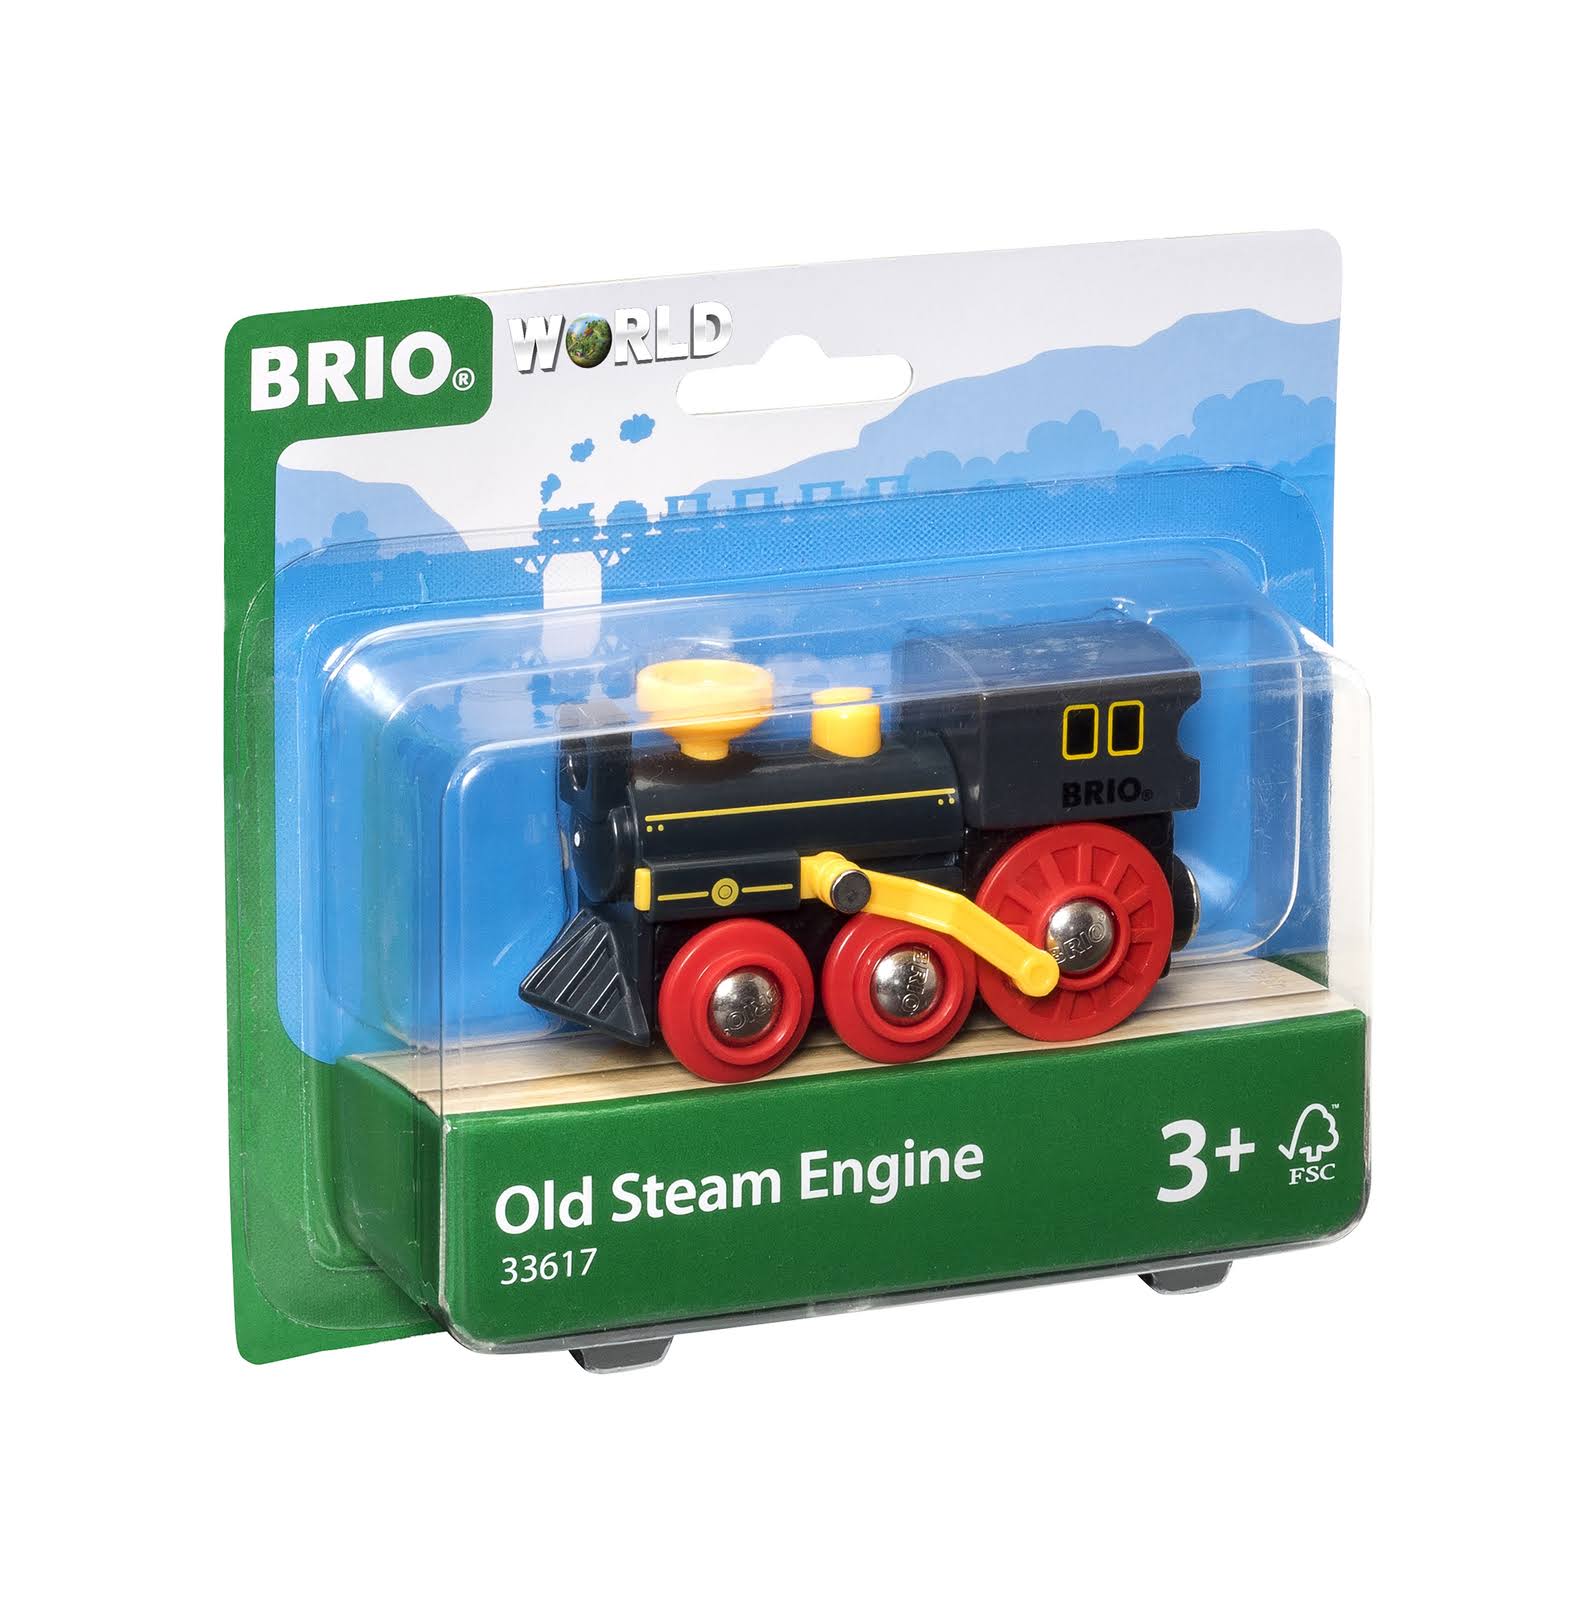 Brio Old Steam Engine Toy